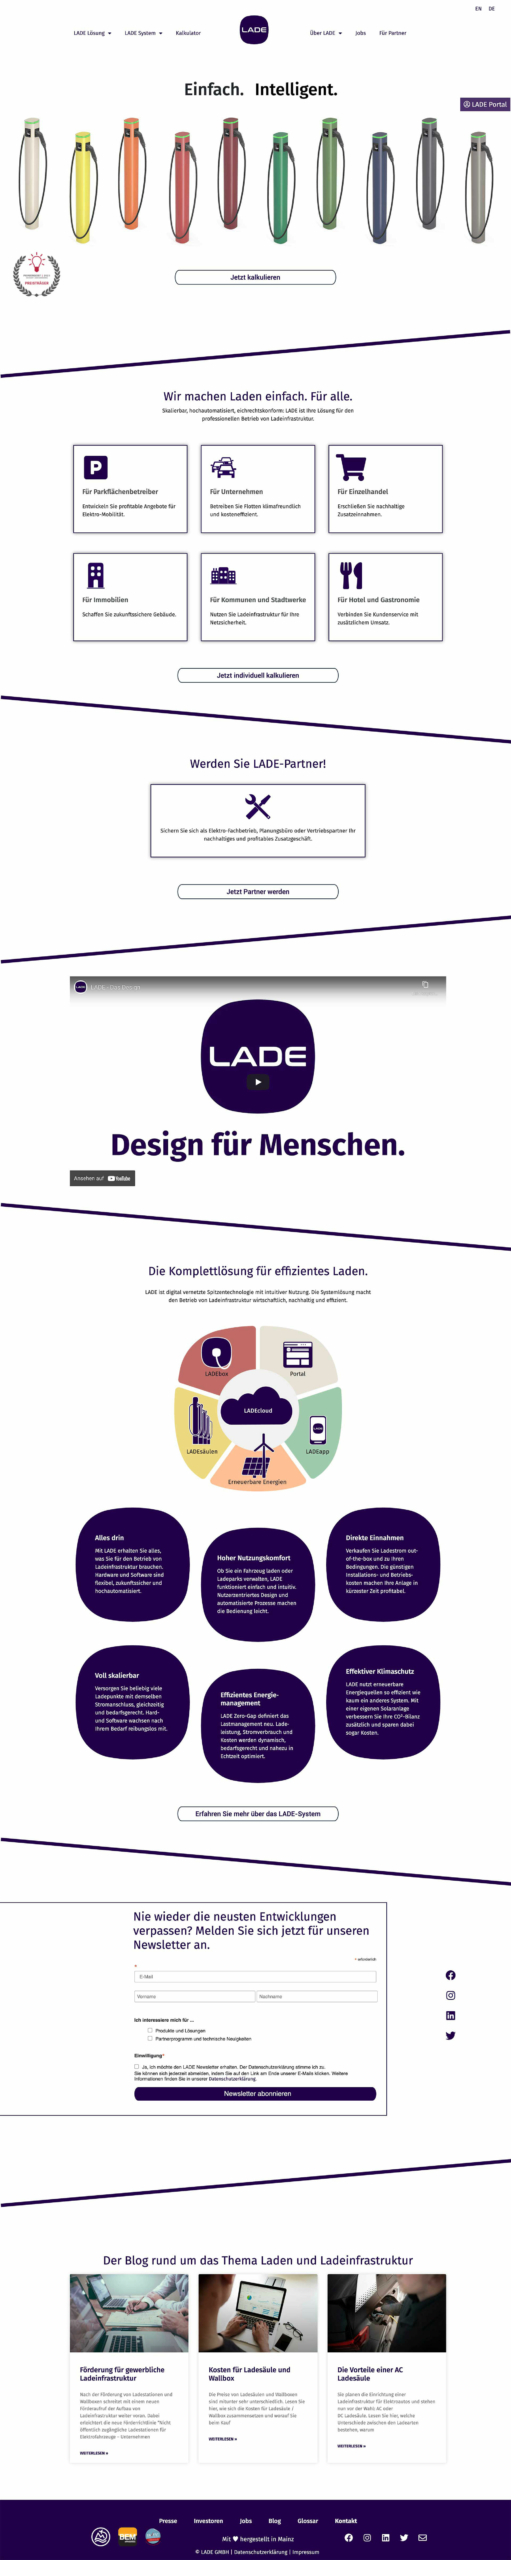 LADE Website – Webdesign, Umsetzung und Corporate Identity